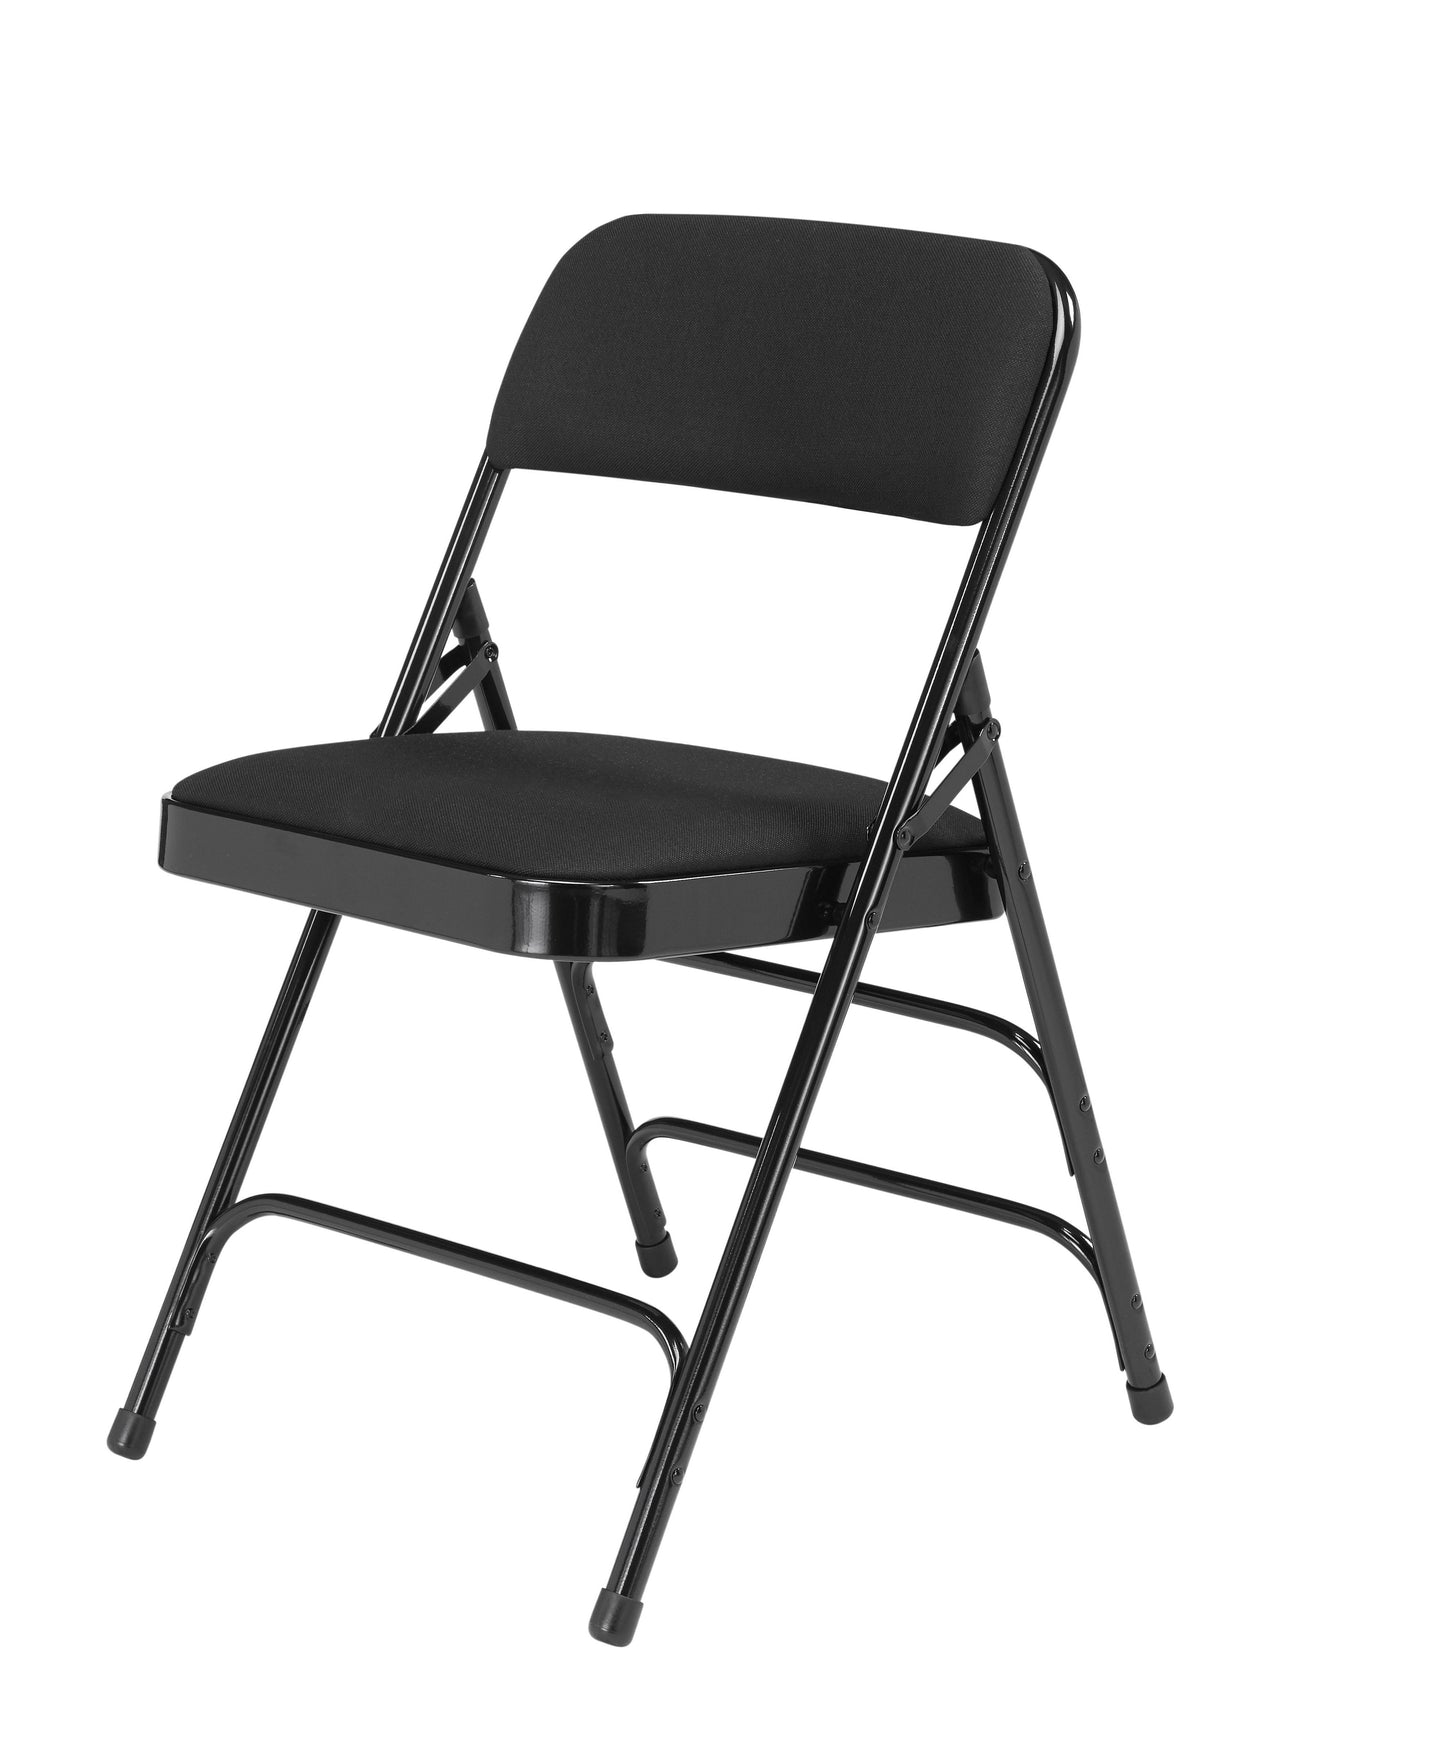 (4 Pack) Commercialine Vinyl Padded Folding Chair - Black